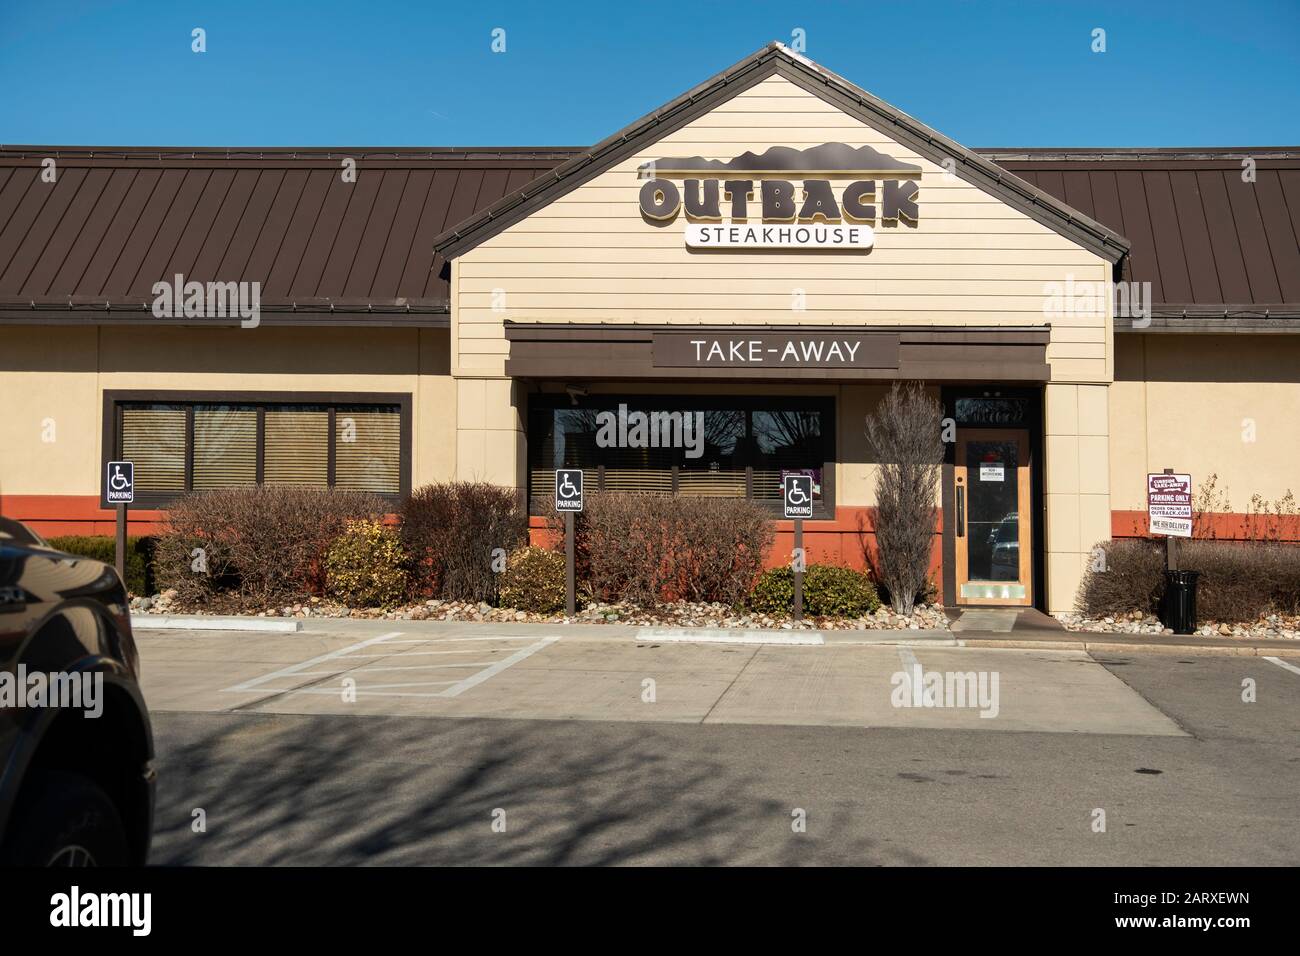 Exterior de Outback Steakhouse, vista trasera que muestra la entrada para llevar. Wichita, Kansas, Estados Unidos. Foto de stock